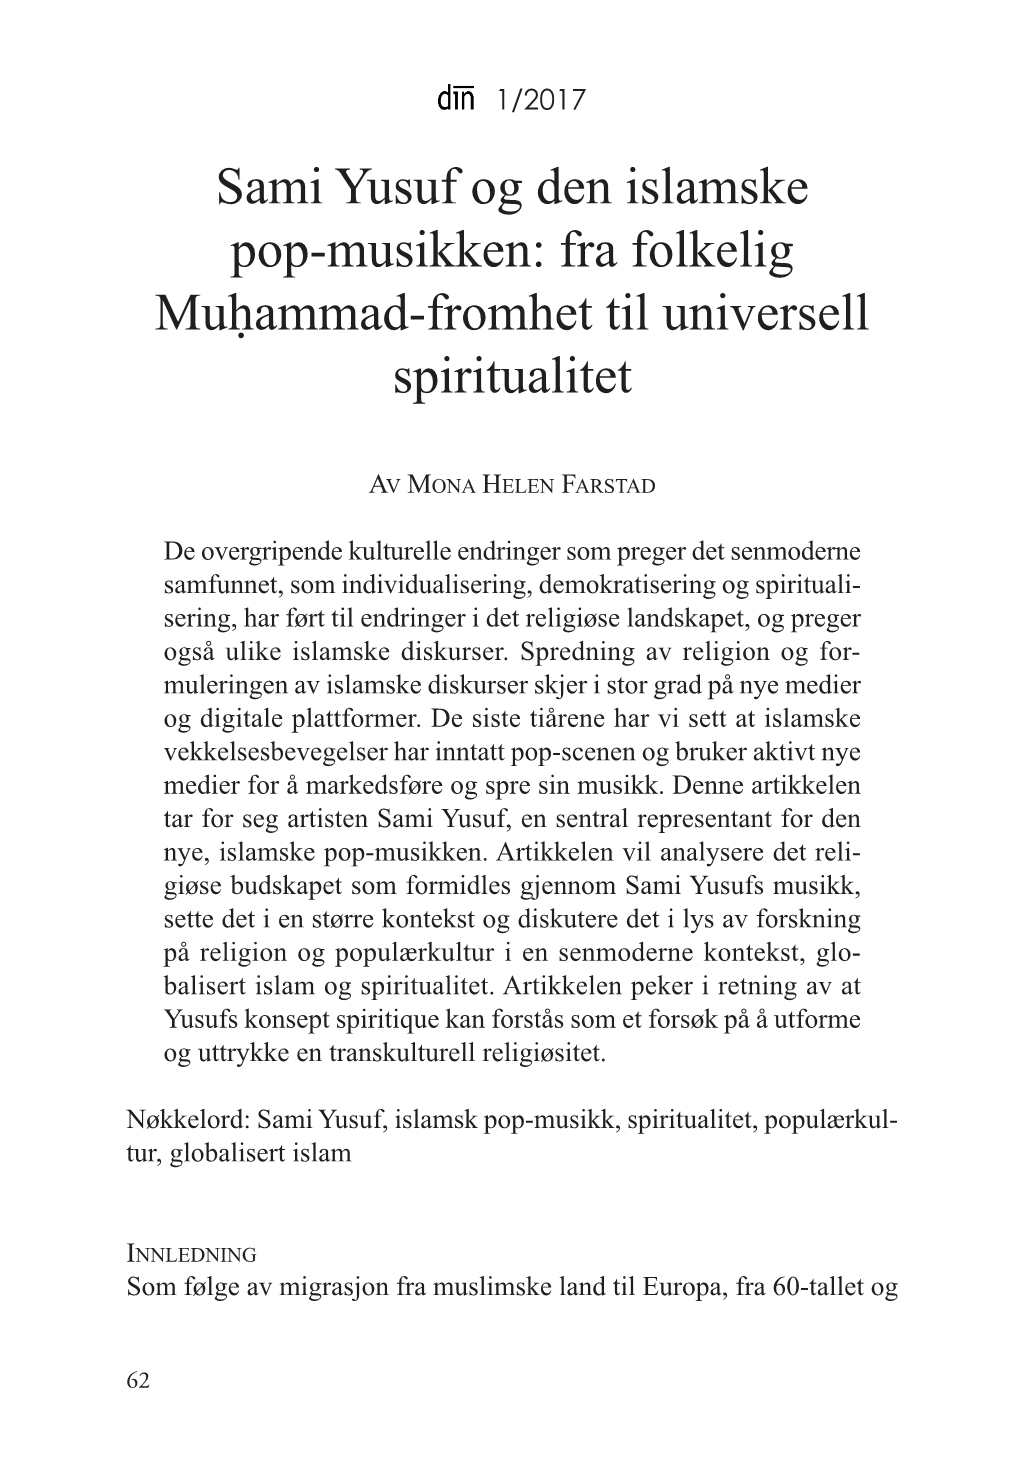 Sami Yusuf Og Den Islamske Pop-Musikken: Fra Folkelig Muḥammad-Fromhet Til Universell Spiritualitet